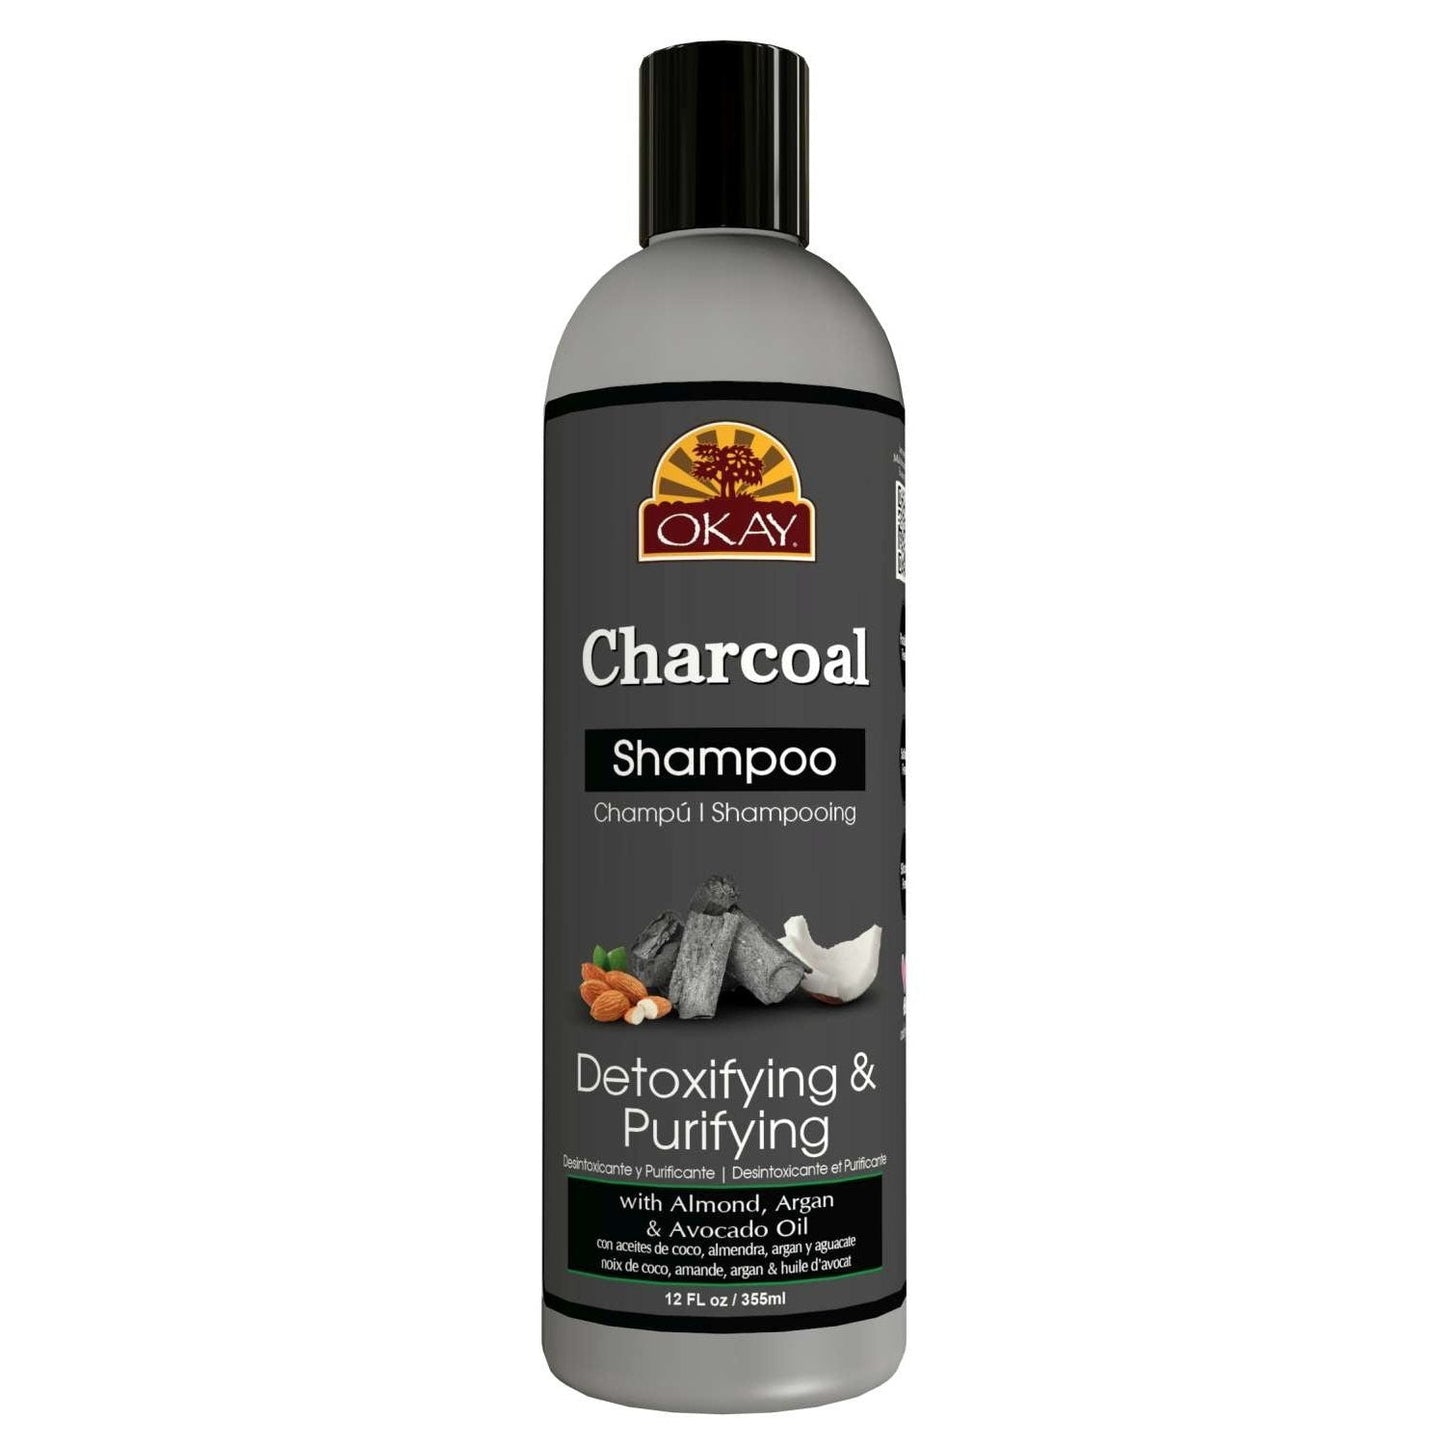 Okay Charcoal Shampoo Detoxifying  Purifying